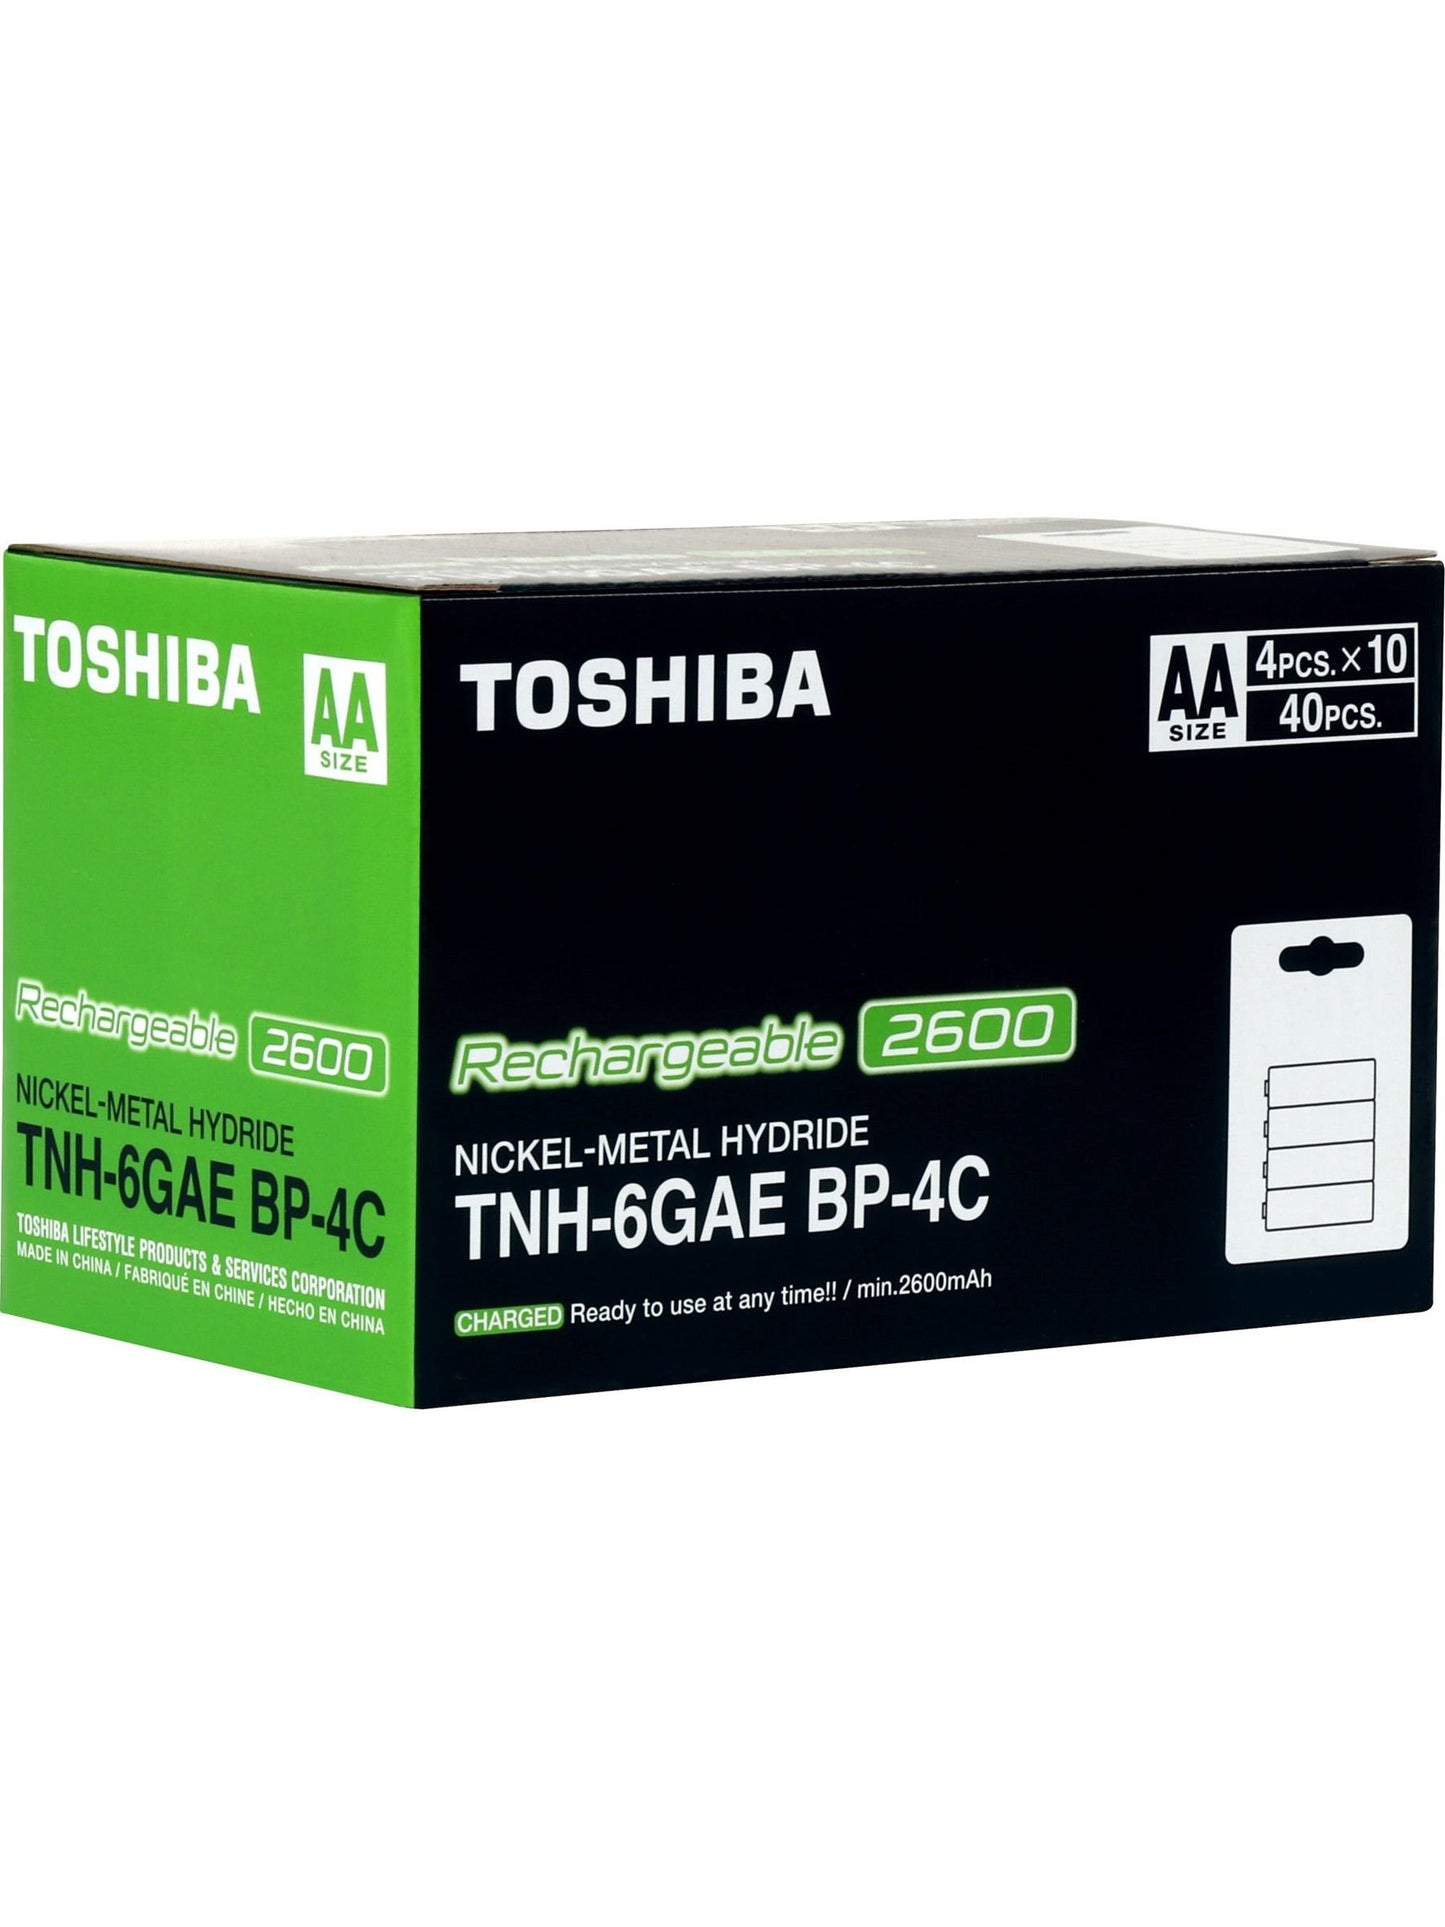 Pilas recargables AA 1.2V x 4 unidades. Toshiba